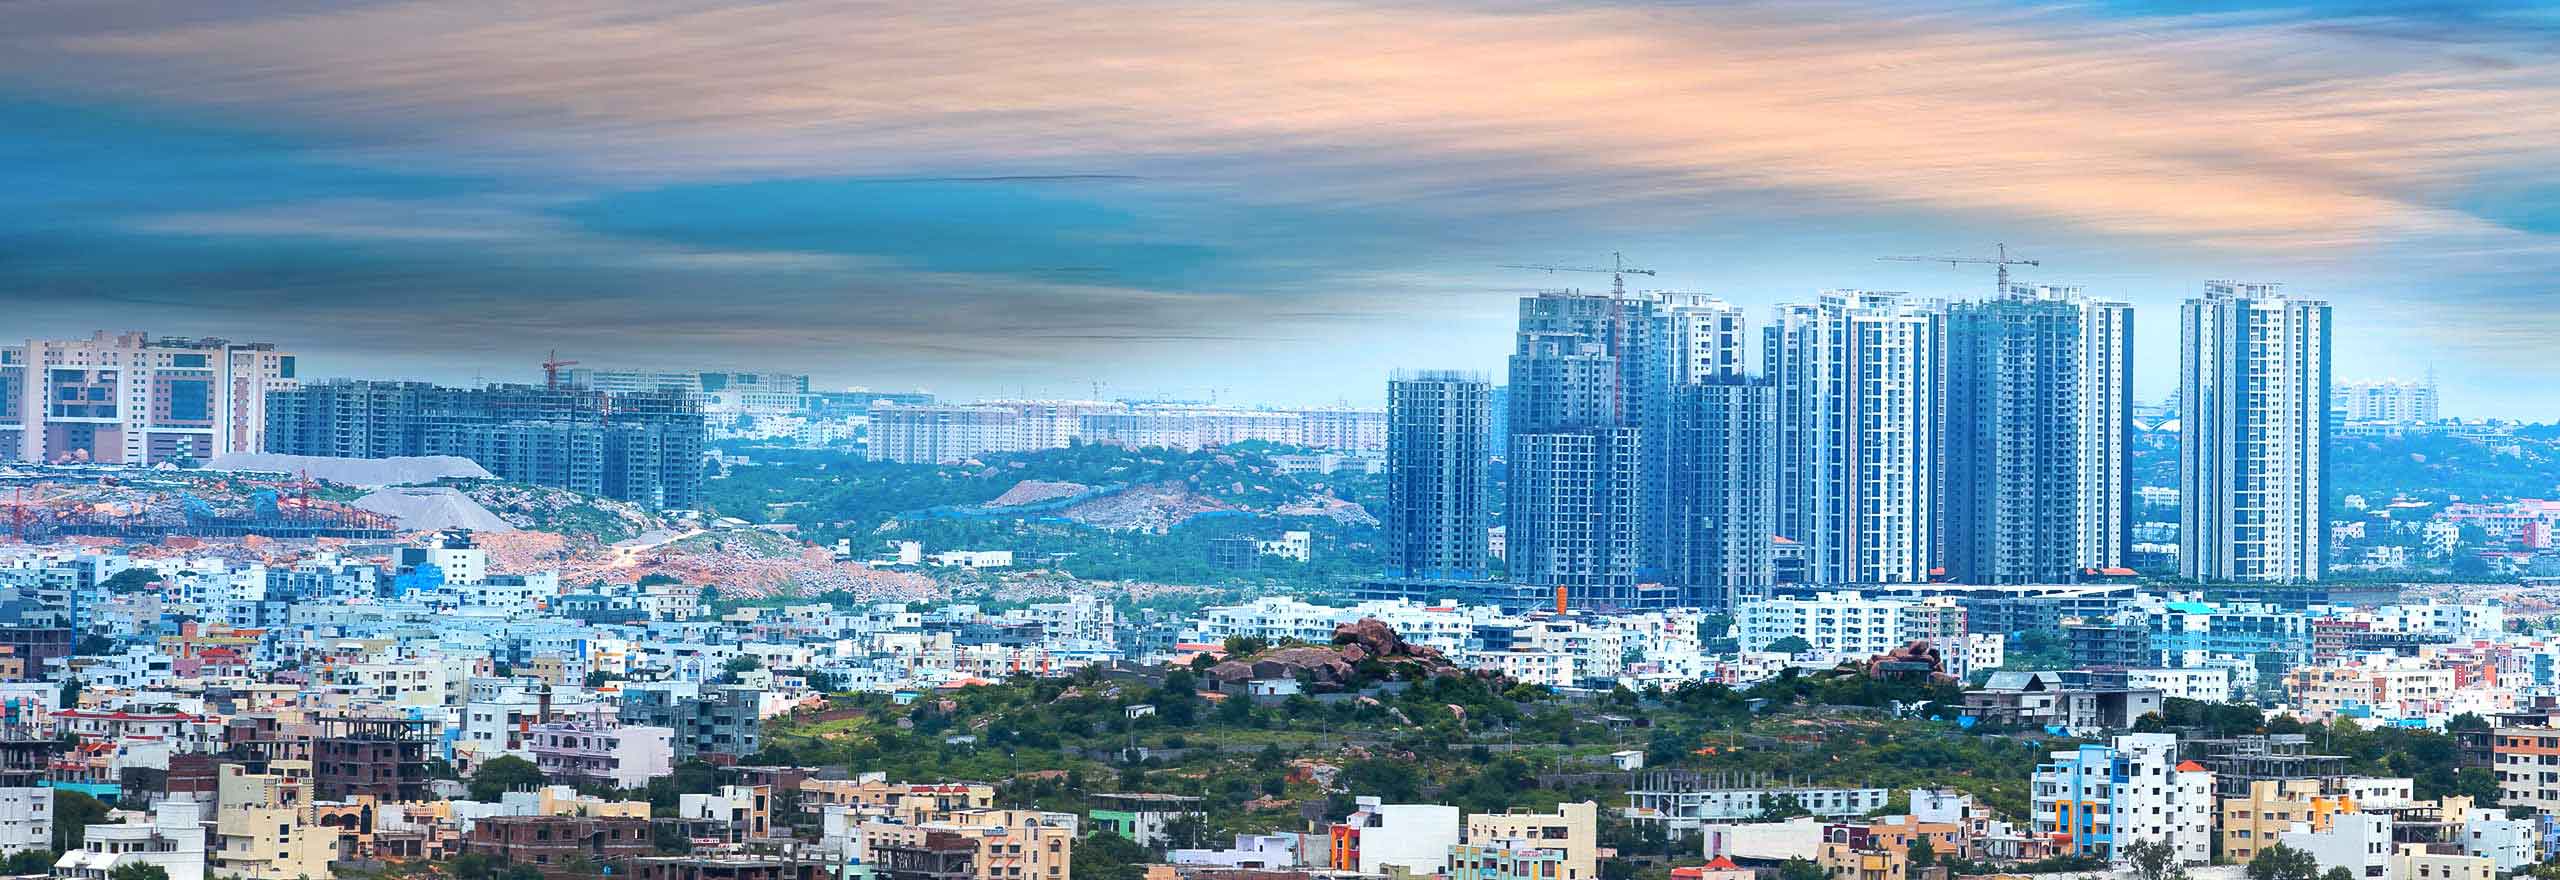 O Centro de Capacitação da Hexagon na Índia, em comparação com o cenário urbano, mostrando o tamanho e as oportunidades que ele traz.